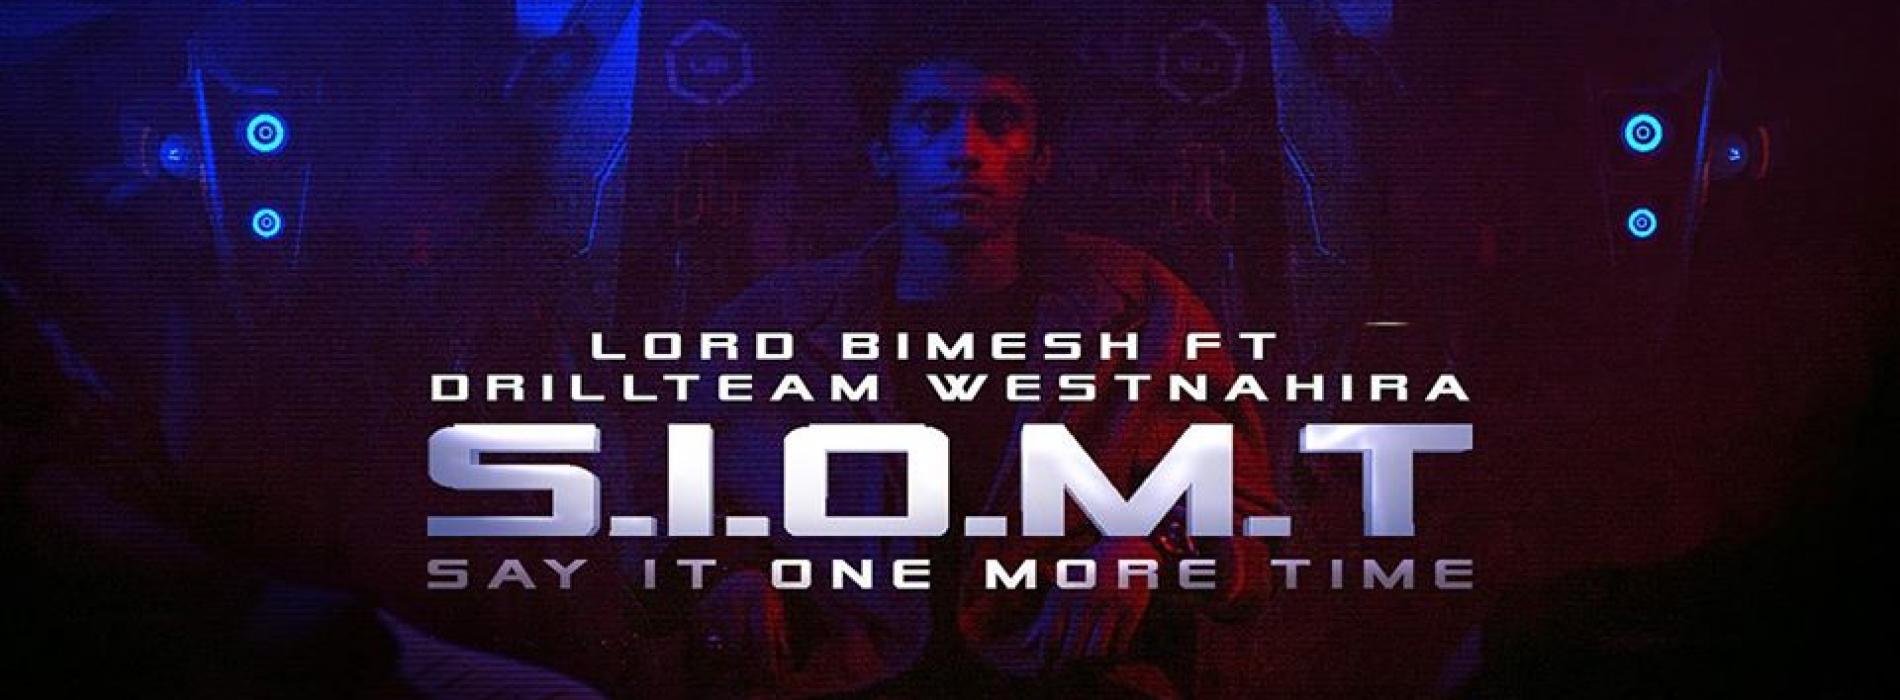 Say It One More Time (S.I.O.M.T) – Lord Bimesh ft Drill Team Westනාහිර | Charitha Attalage